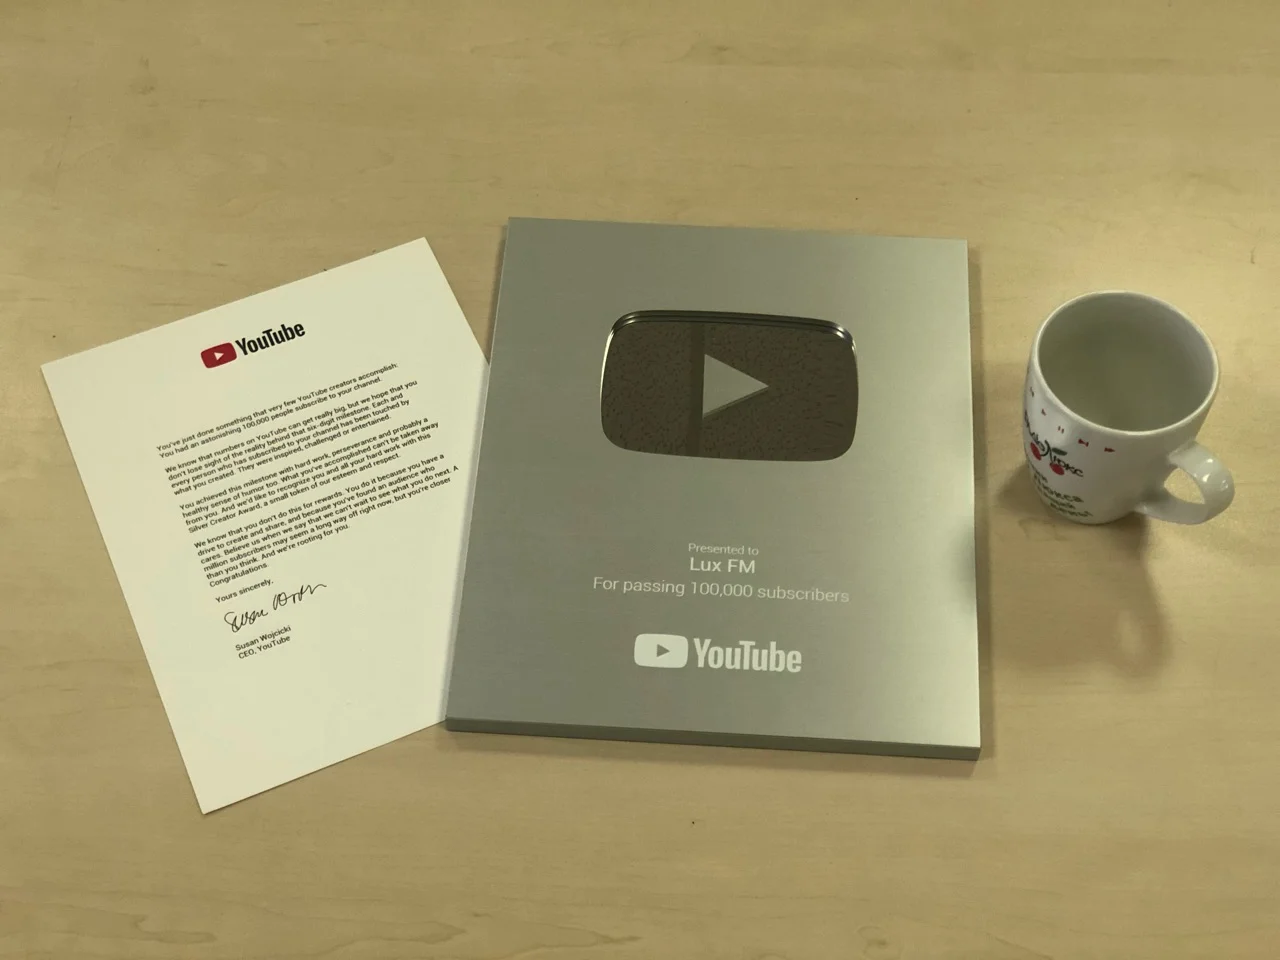 Гордість і щастя: Люкс ФМ отримав срібну кнопку YouTube - фото 401610